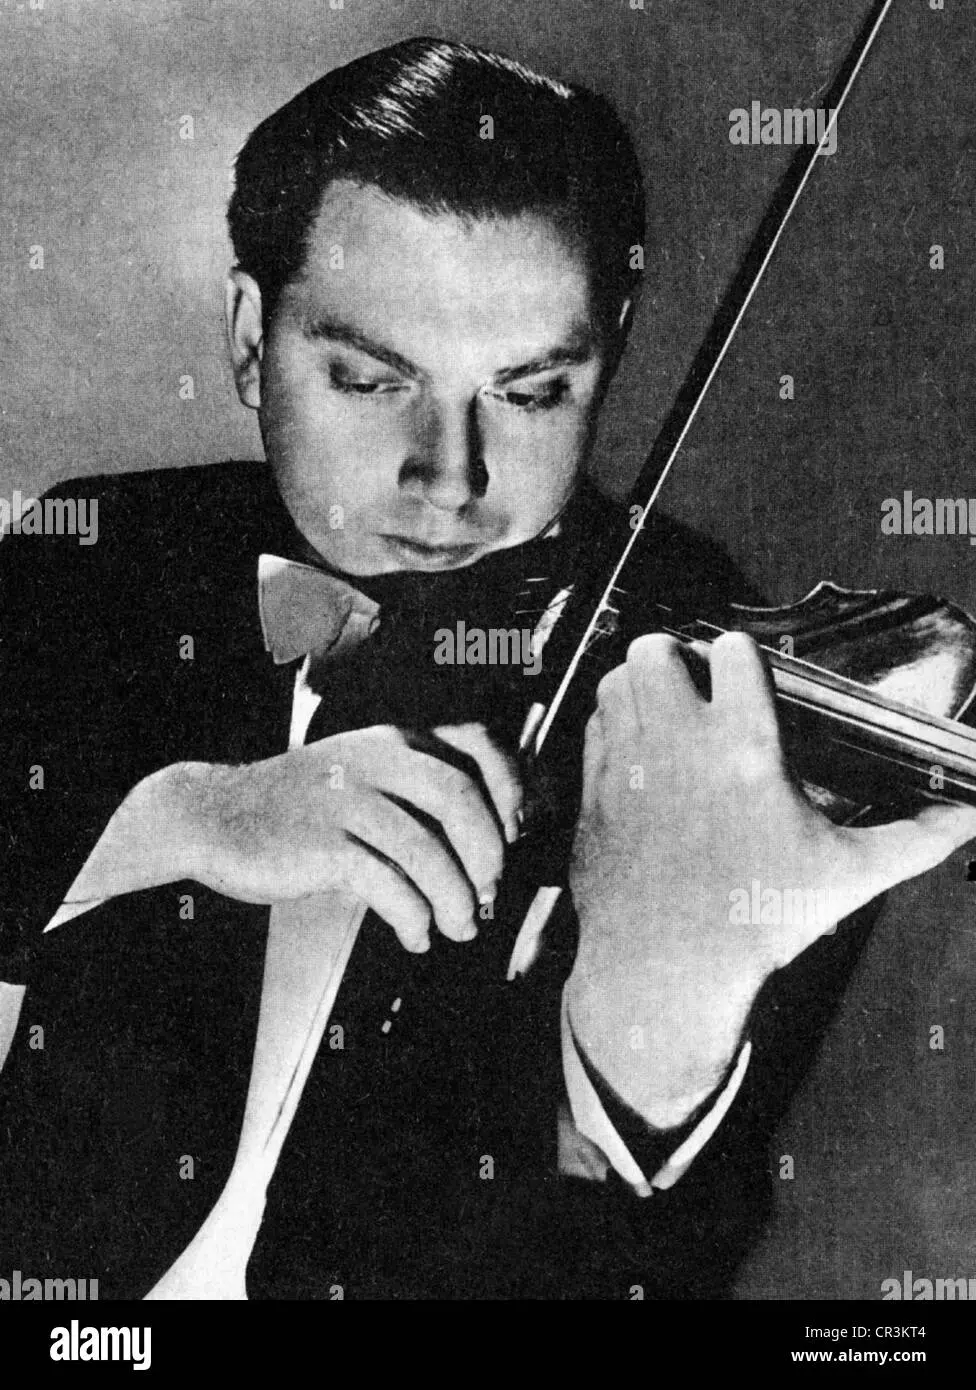 isaac violinista americano - Por qué es famoso Isaac Stern